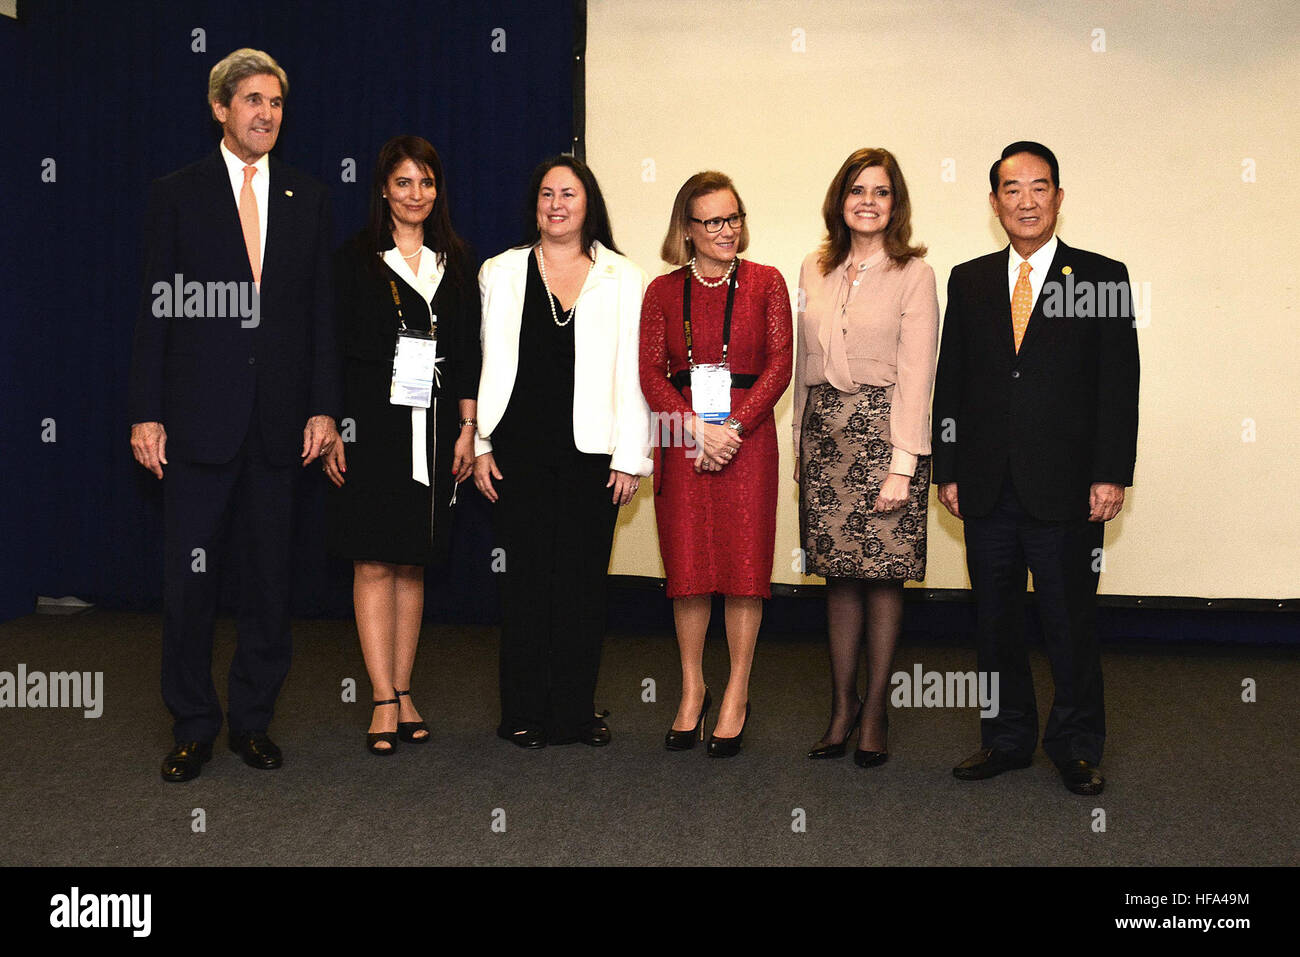 Le secrétaire d'Etat John Kerry pose pour une photo avec les dirigeants à la session 4 de la Coopération économique Asie-Pacifique (APEC) Réunion ministérielle à Lima, Pérou, le 18 novembre 2016. Banque D'Images